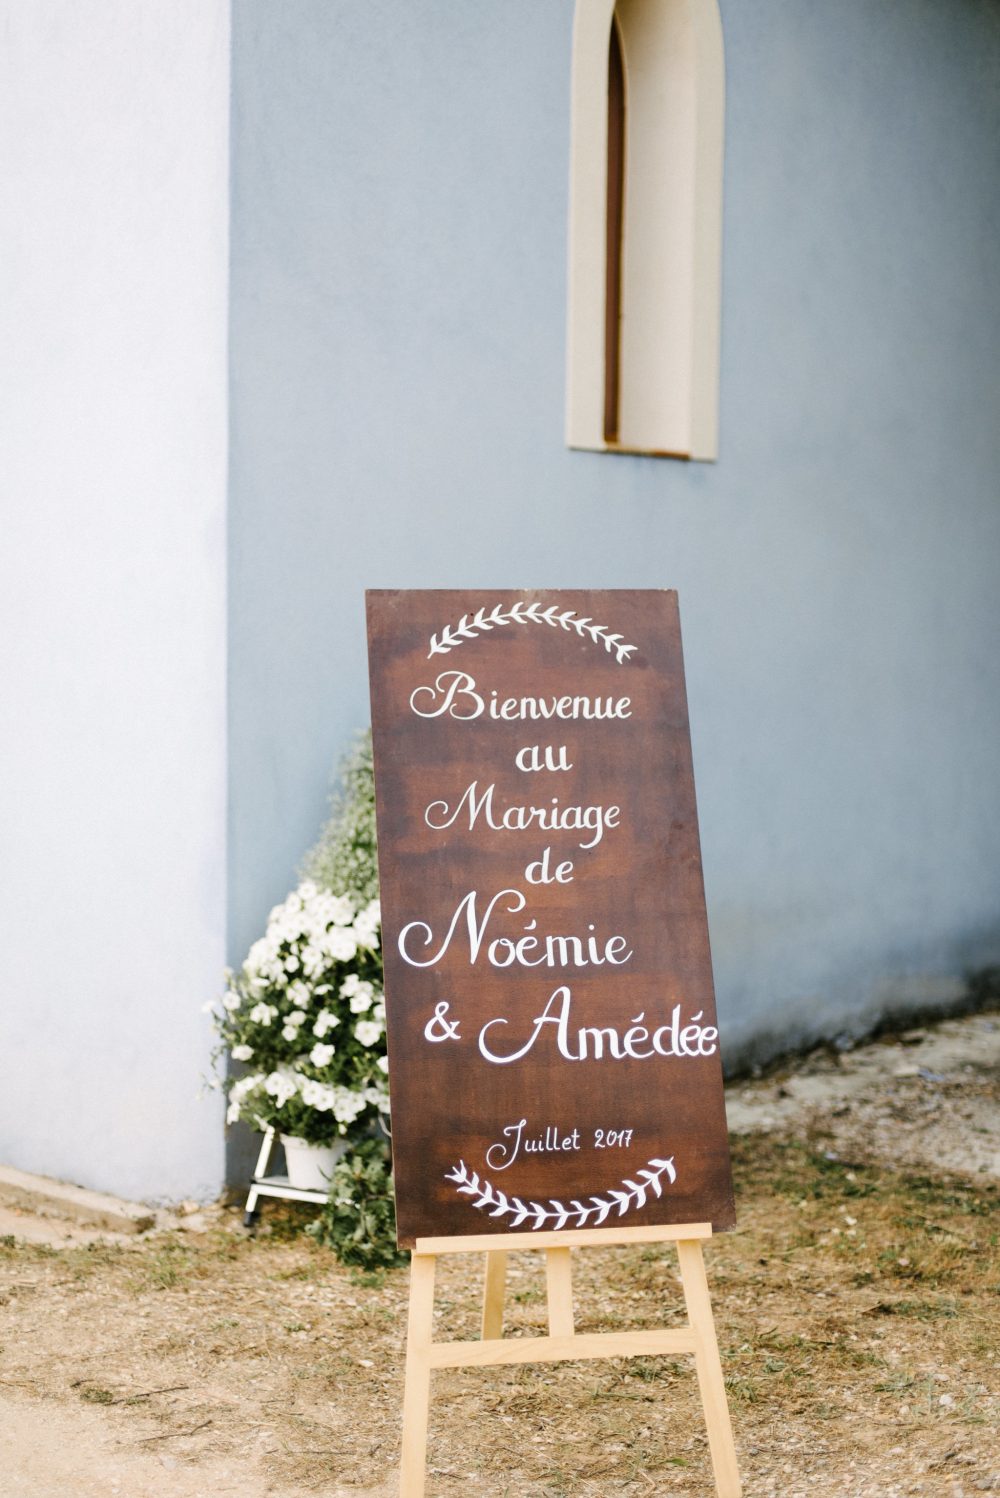 Le mariage de Noémie et Amédée dans leur maison de famille - Blog Mariage Madame C